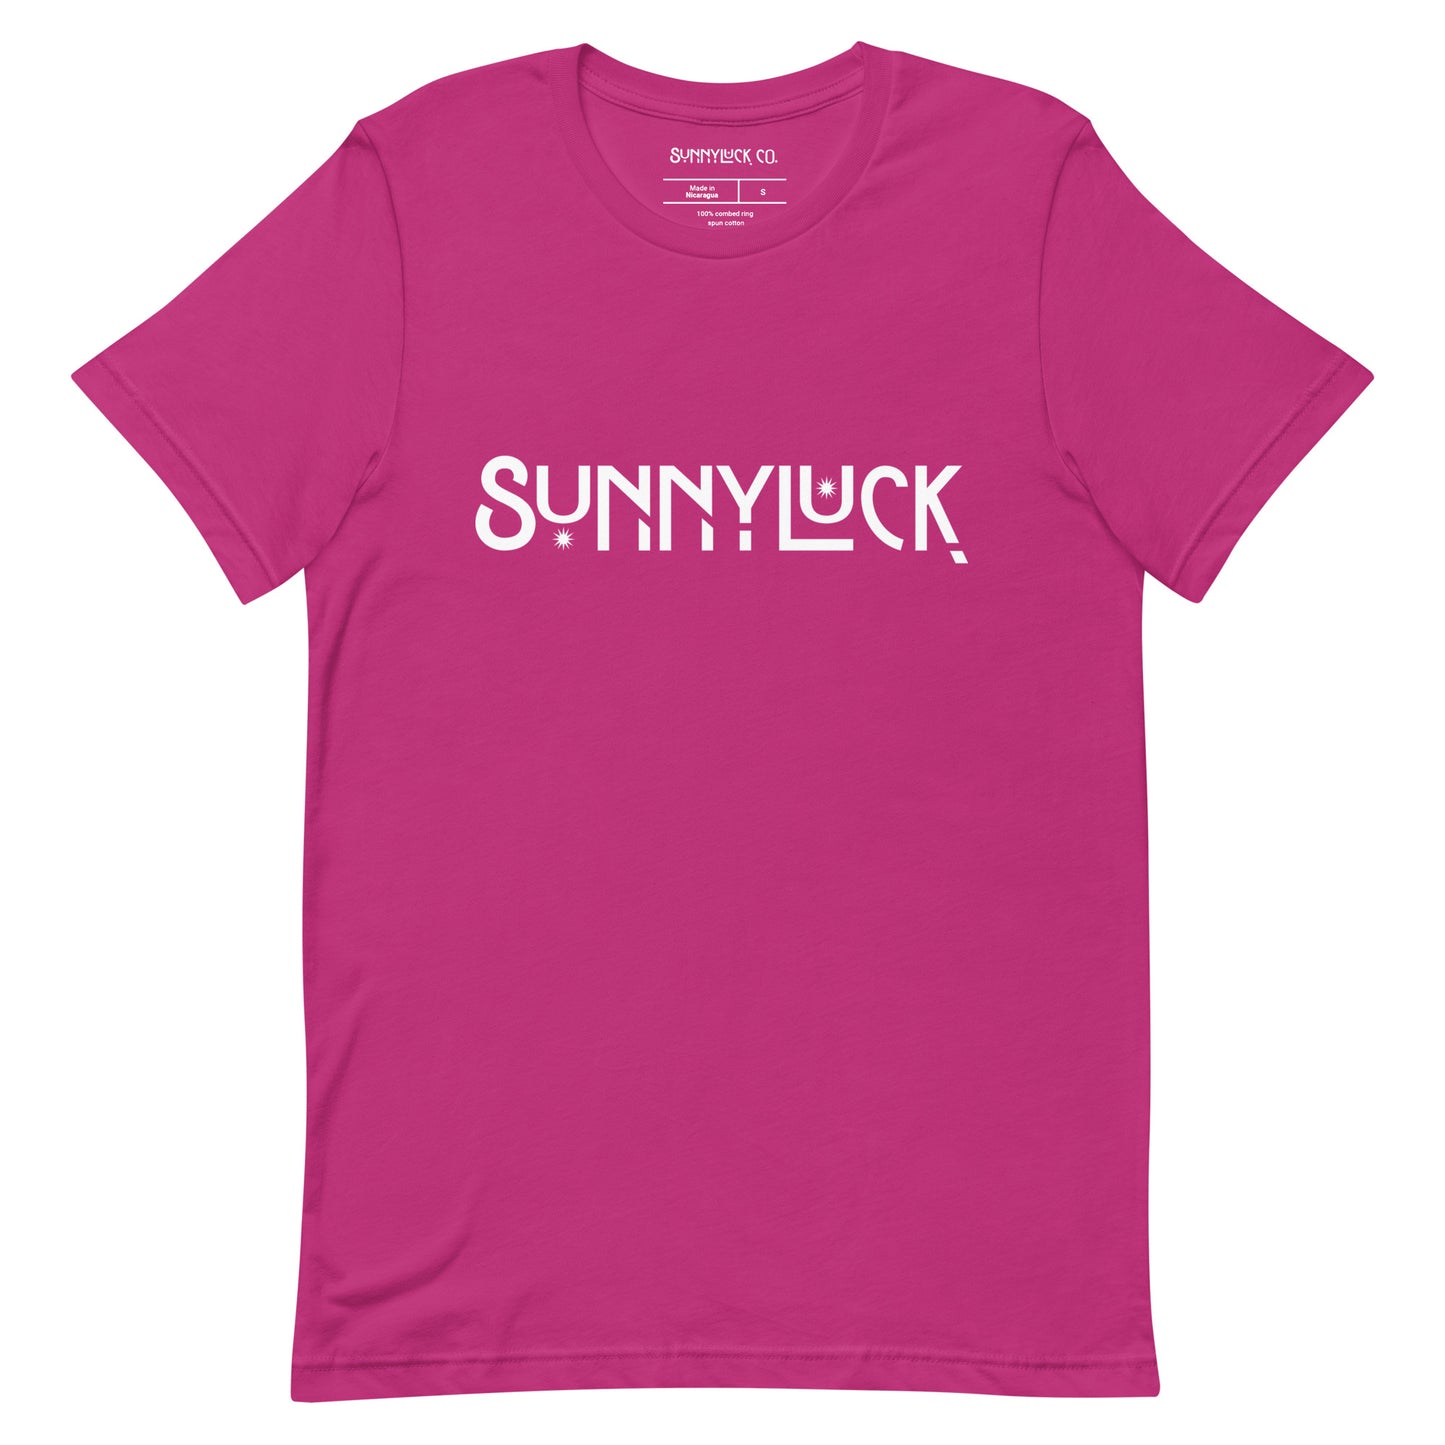 The SunnyLuck Tee